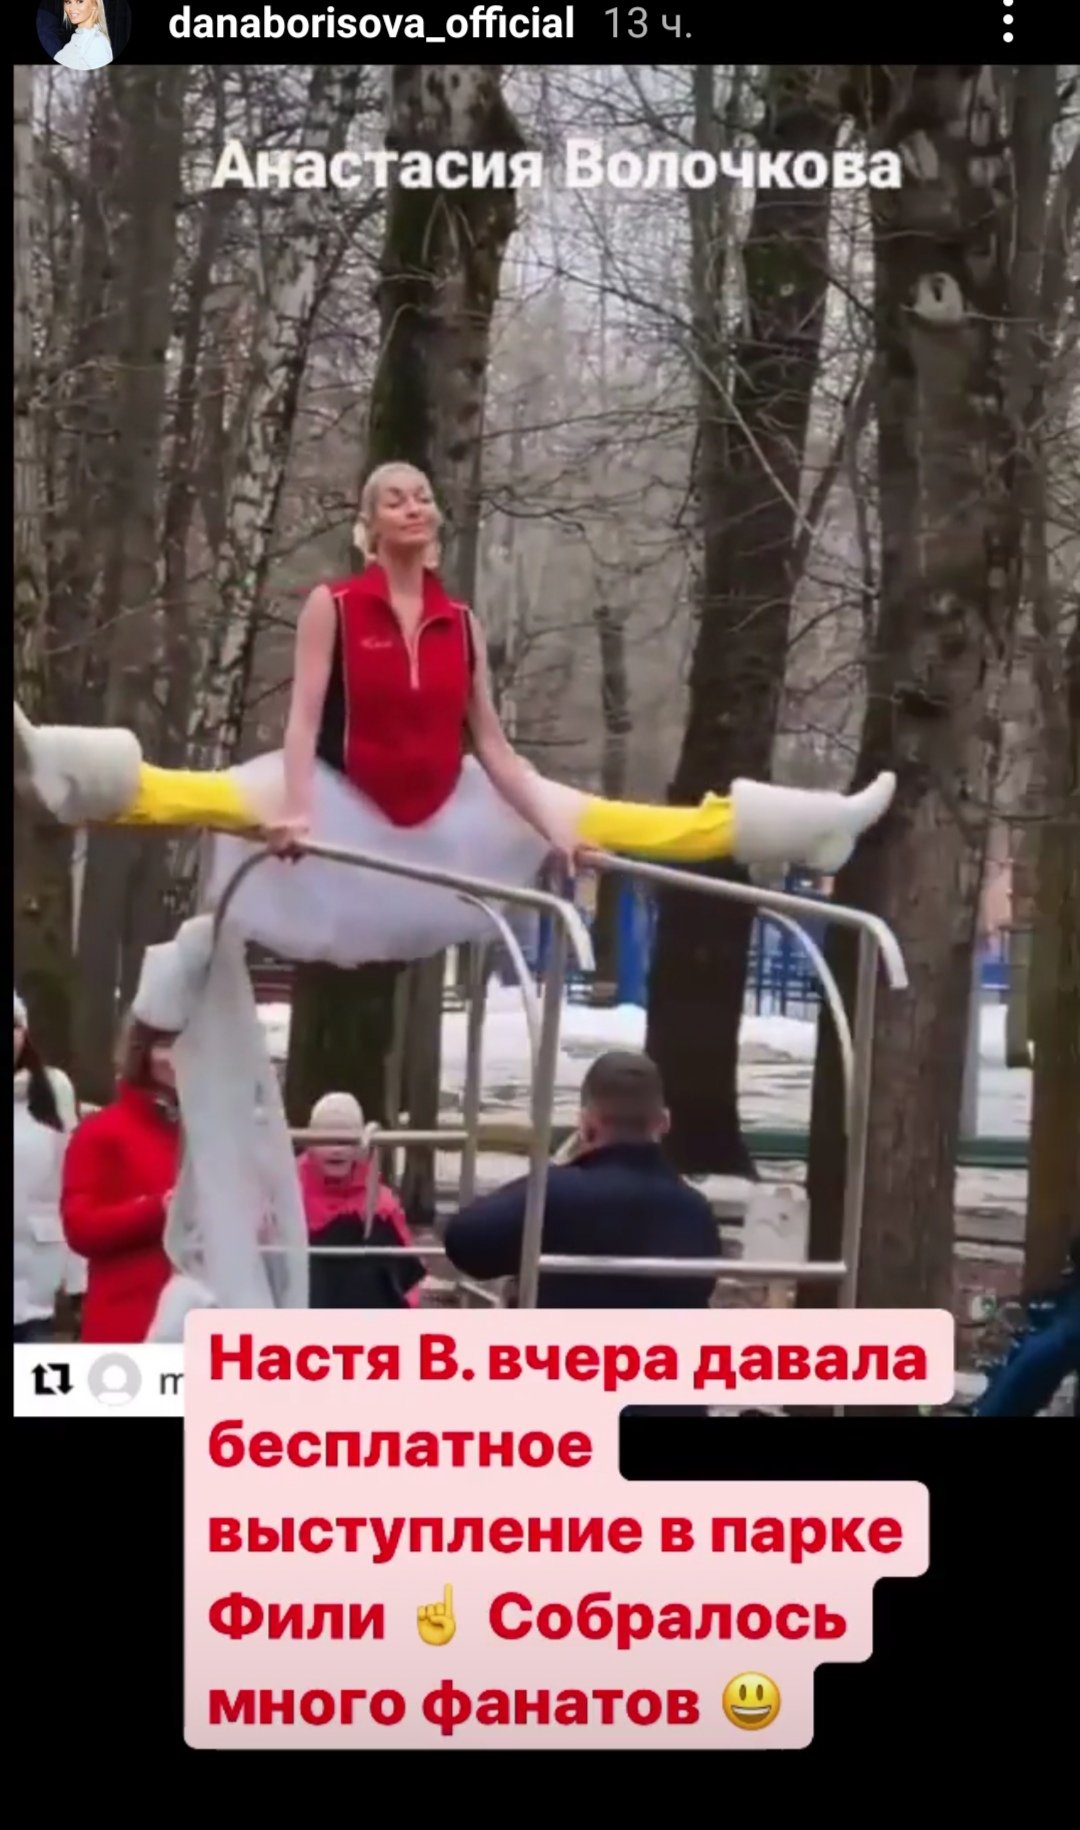 Анастасия Волочкова прокатилась по парку на металлической конструкции